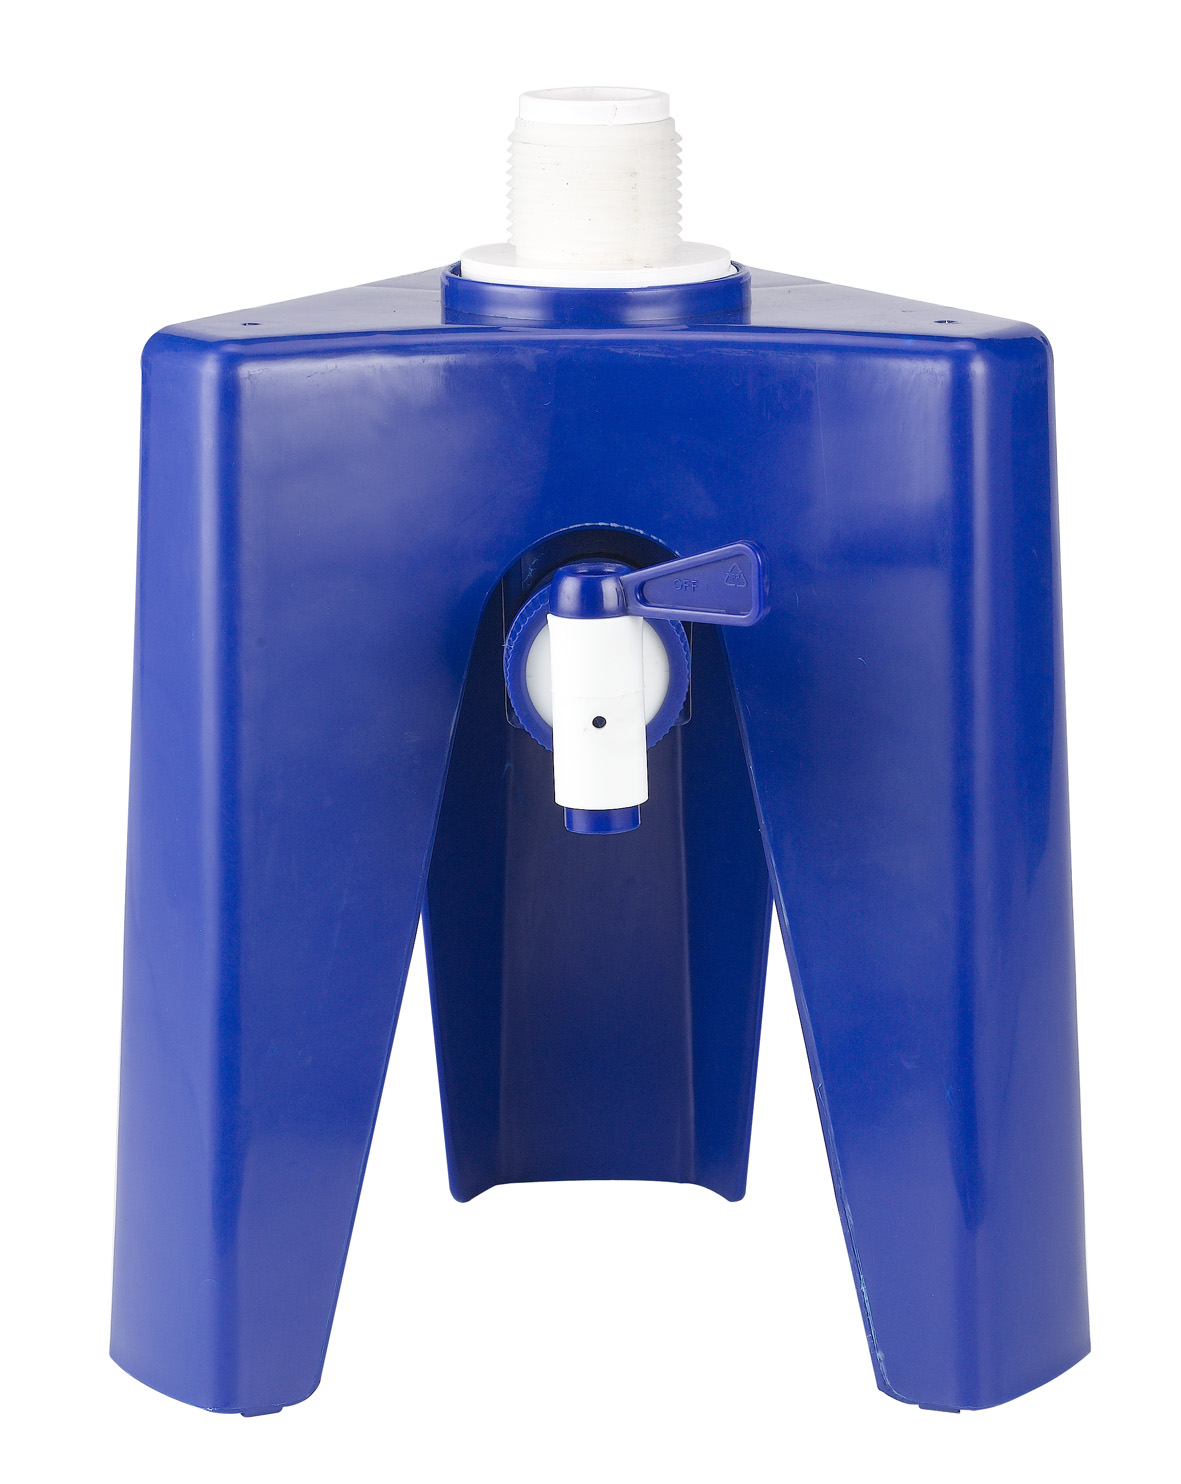 Water Dispenser  - Water Dispenser Tripod